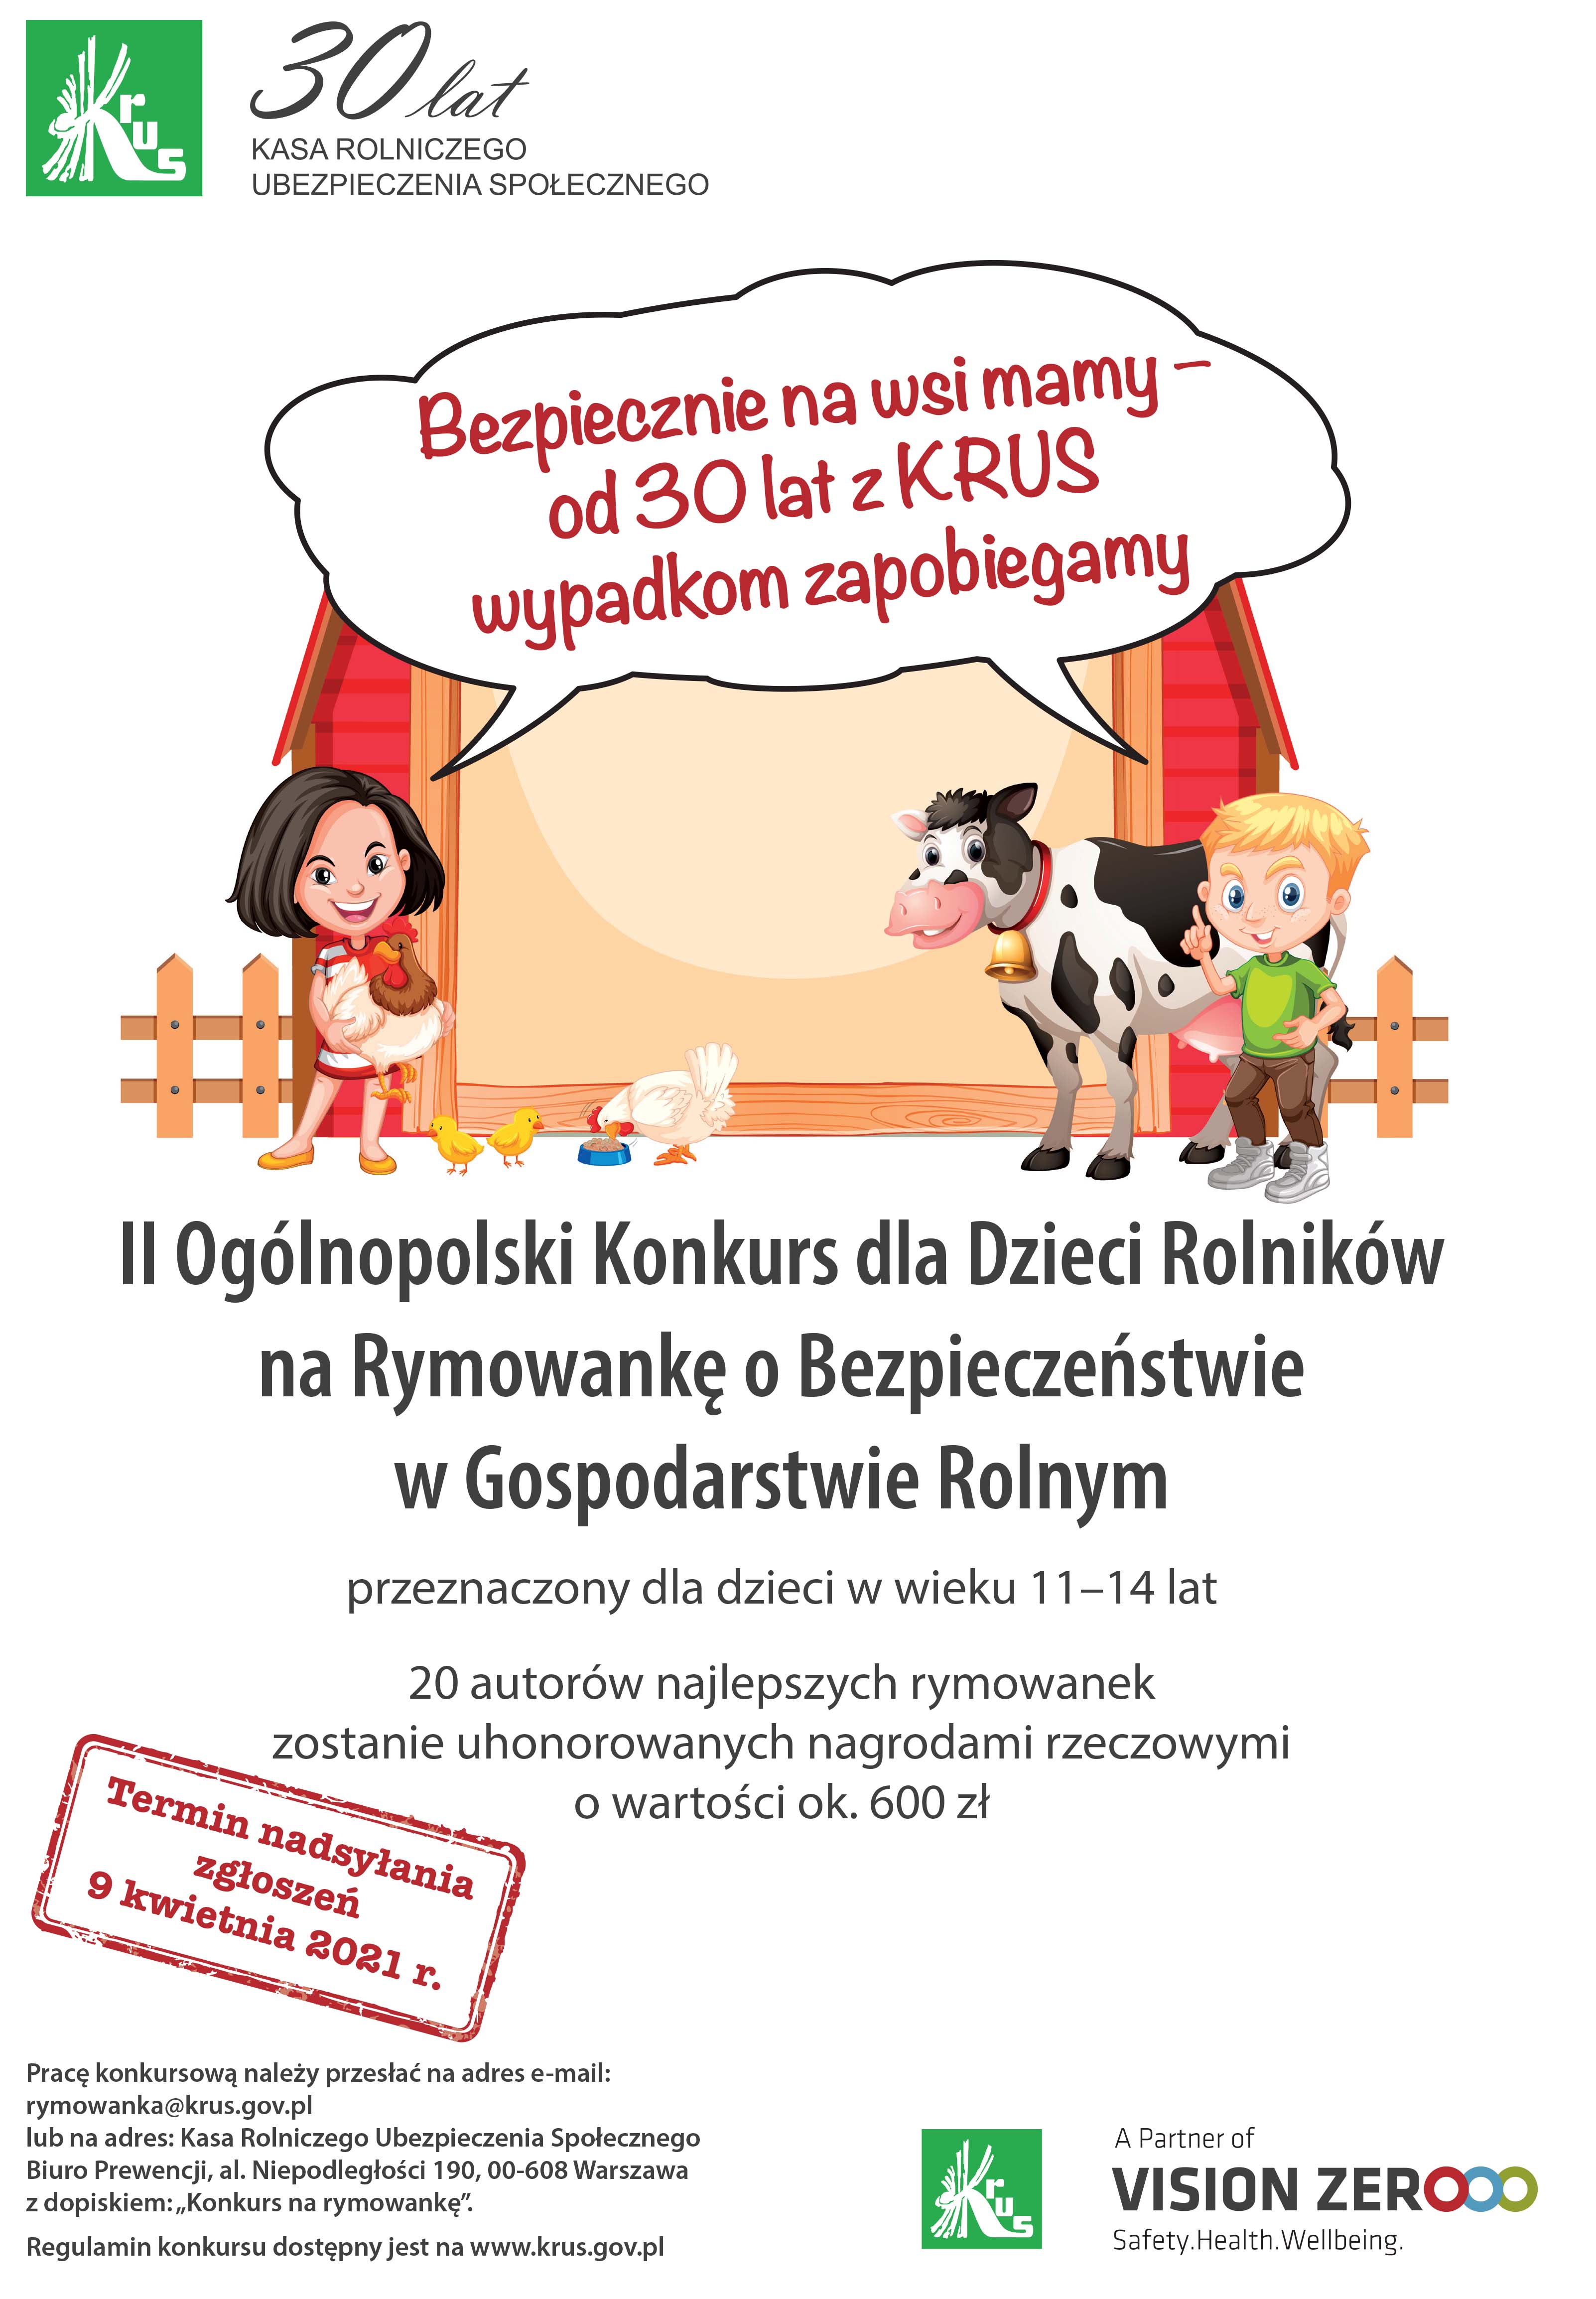 II Ogólnopolski Konkurs dla Dzieci Rolników na Rymowankę o Bezpieczeństwie w Gospodarstwie Rolnym